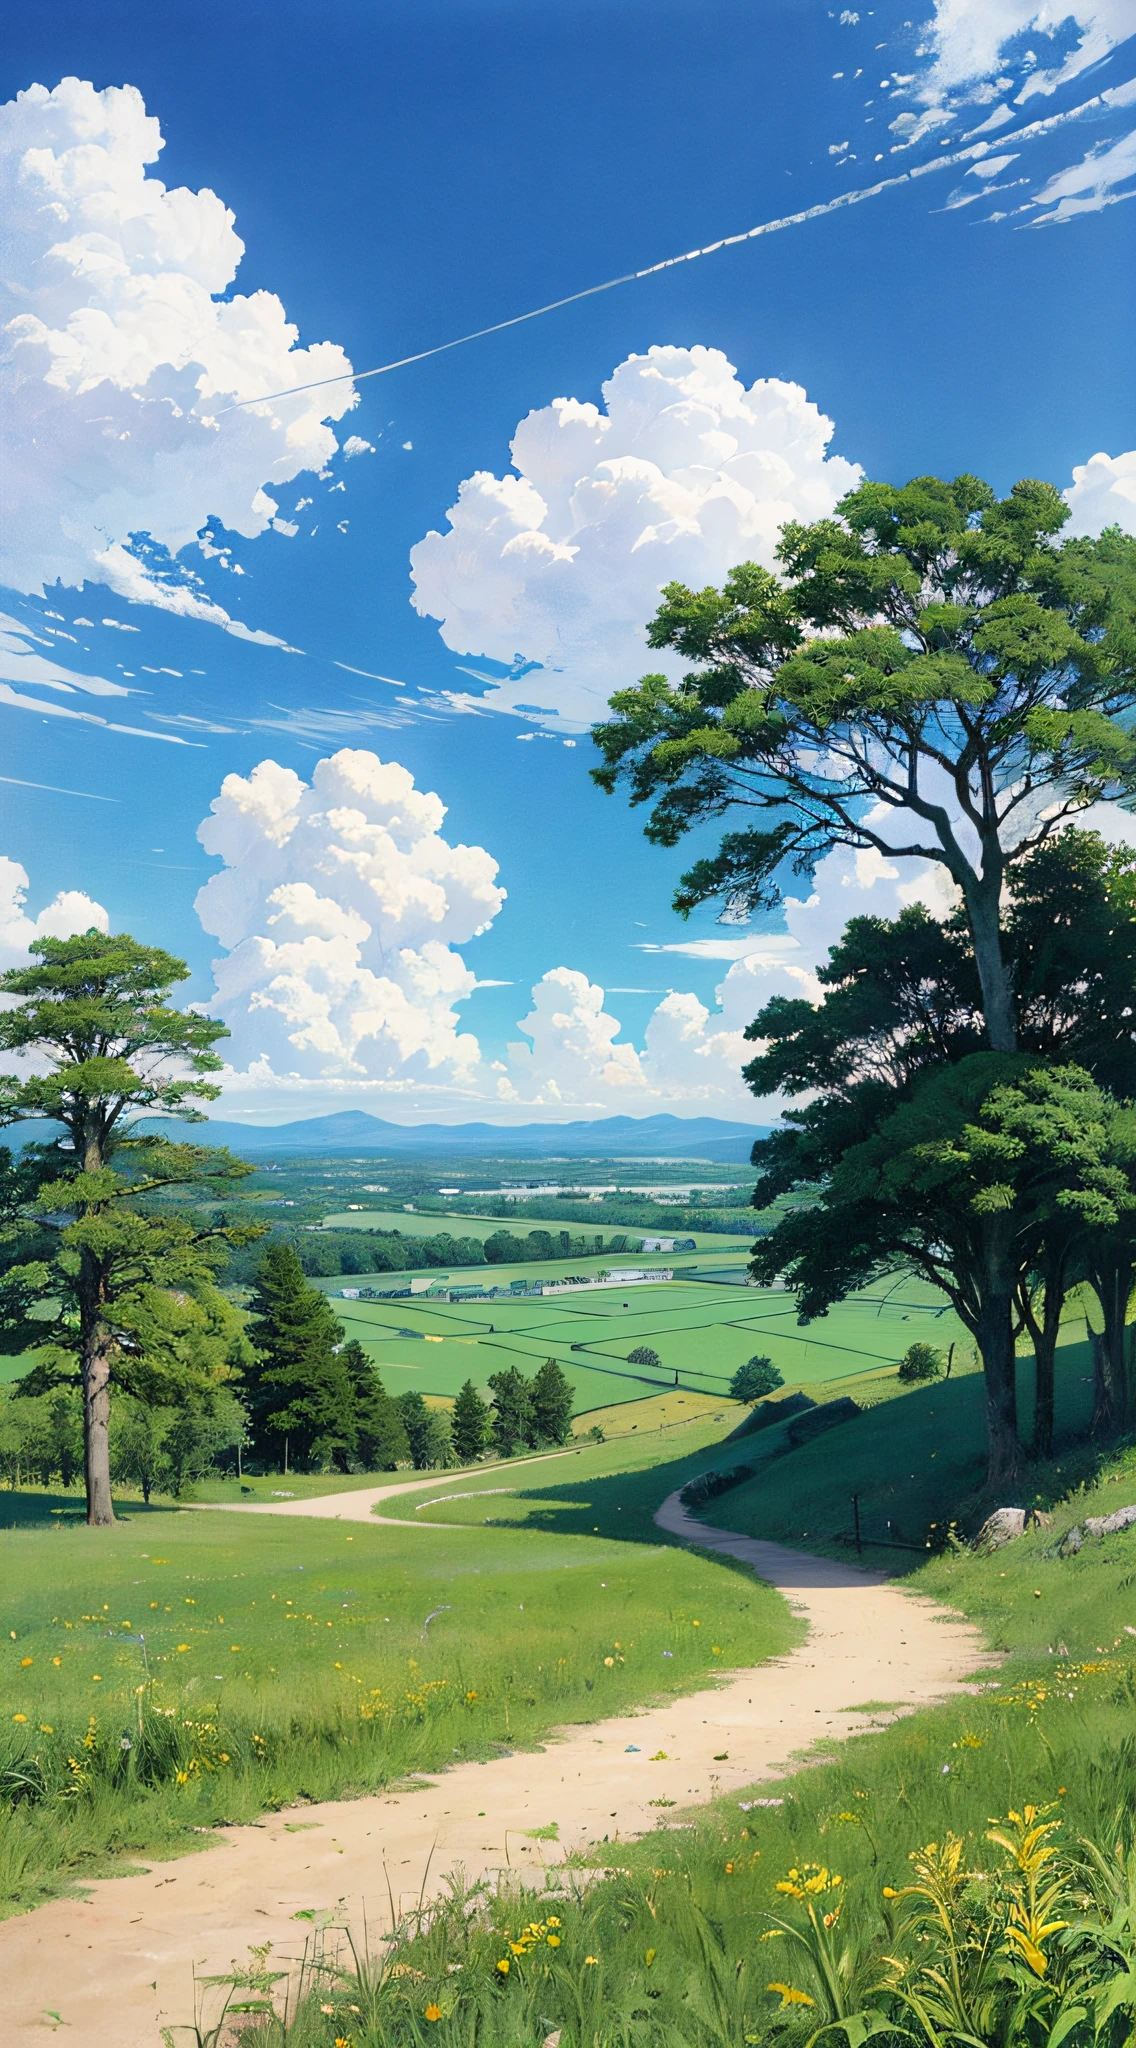 현실적인, 진본인, 아름답고 놀라운 풍경 유화 스튜디오 지브리 미야자키 하야오&#39;푸른 하늘과 흰 구름이 있는 꽃잎 초원 --v6